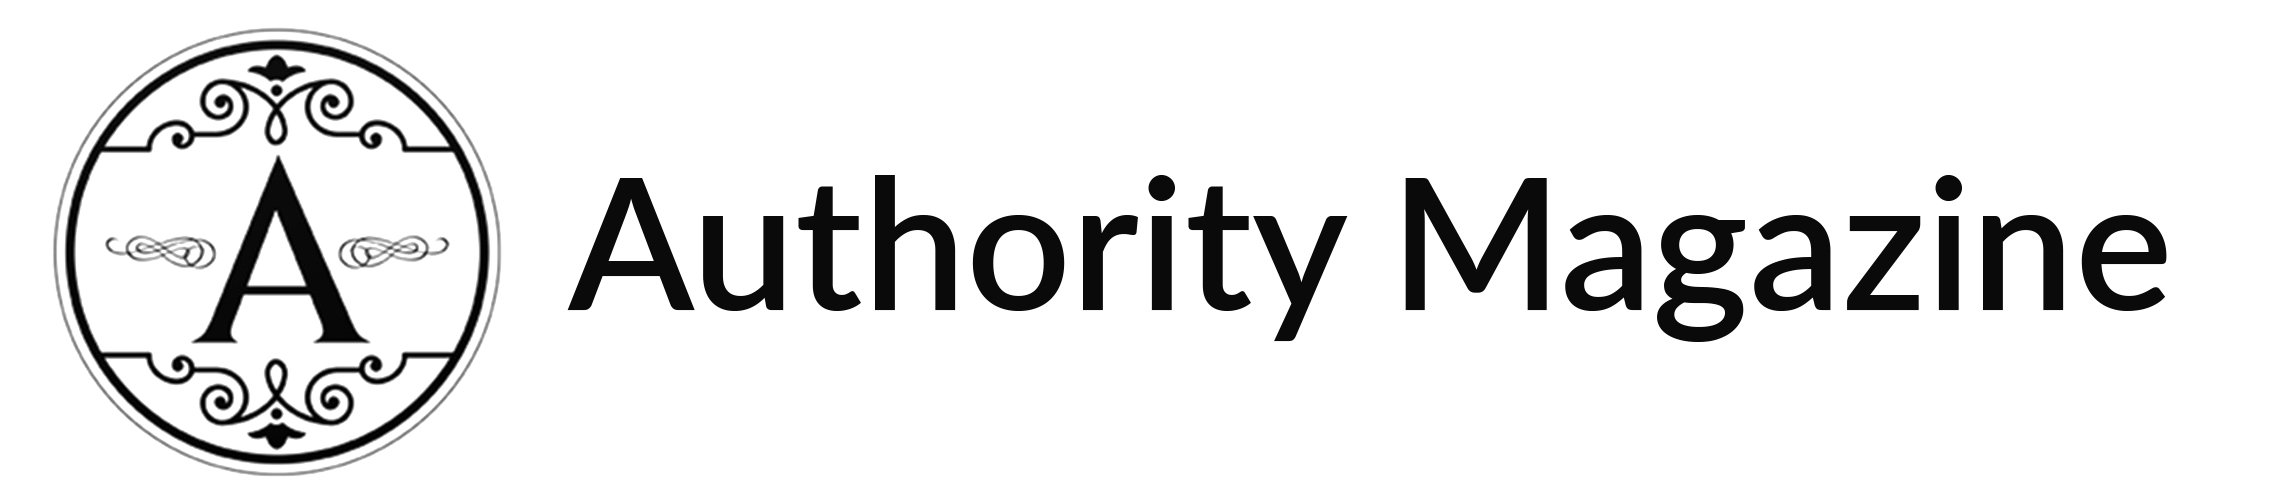 authority magazine logo png